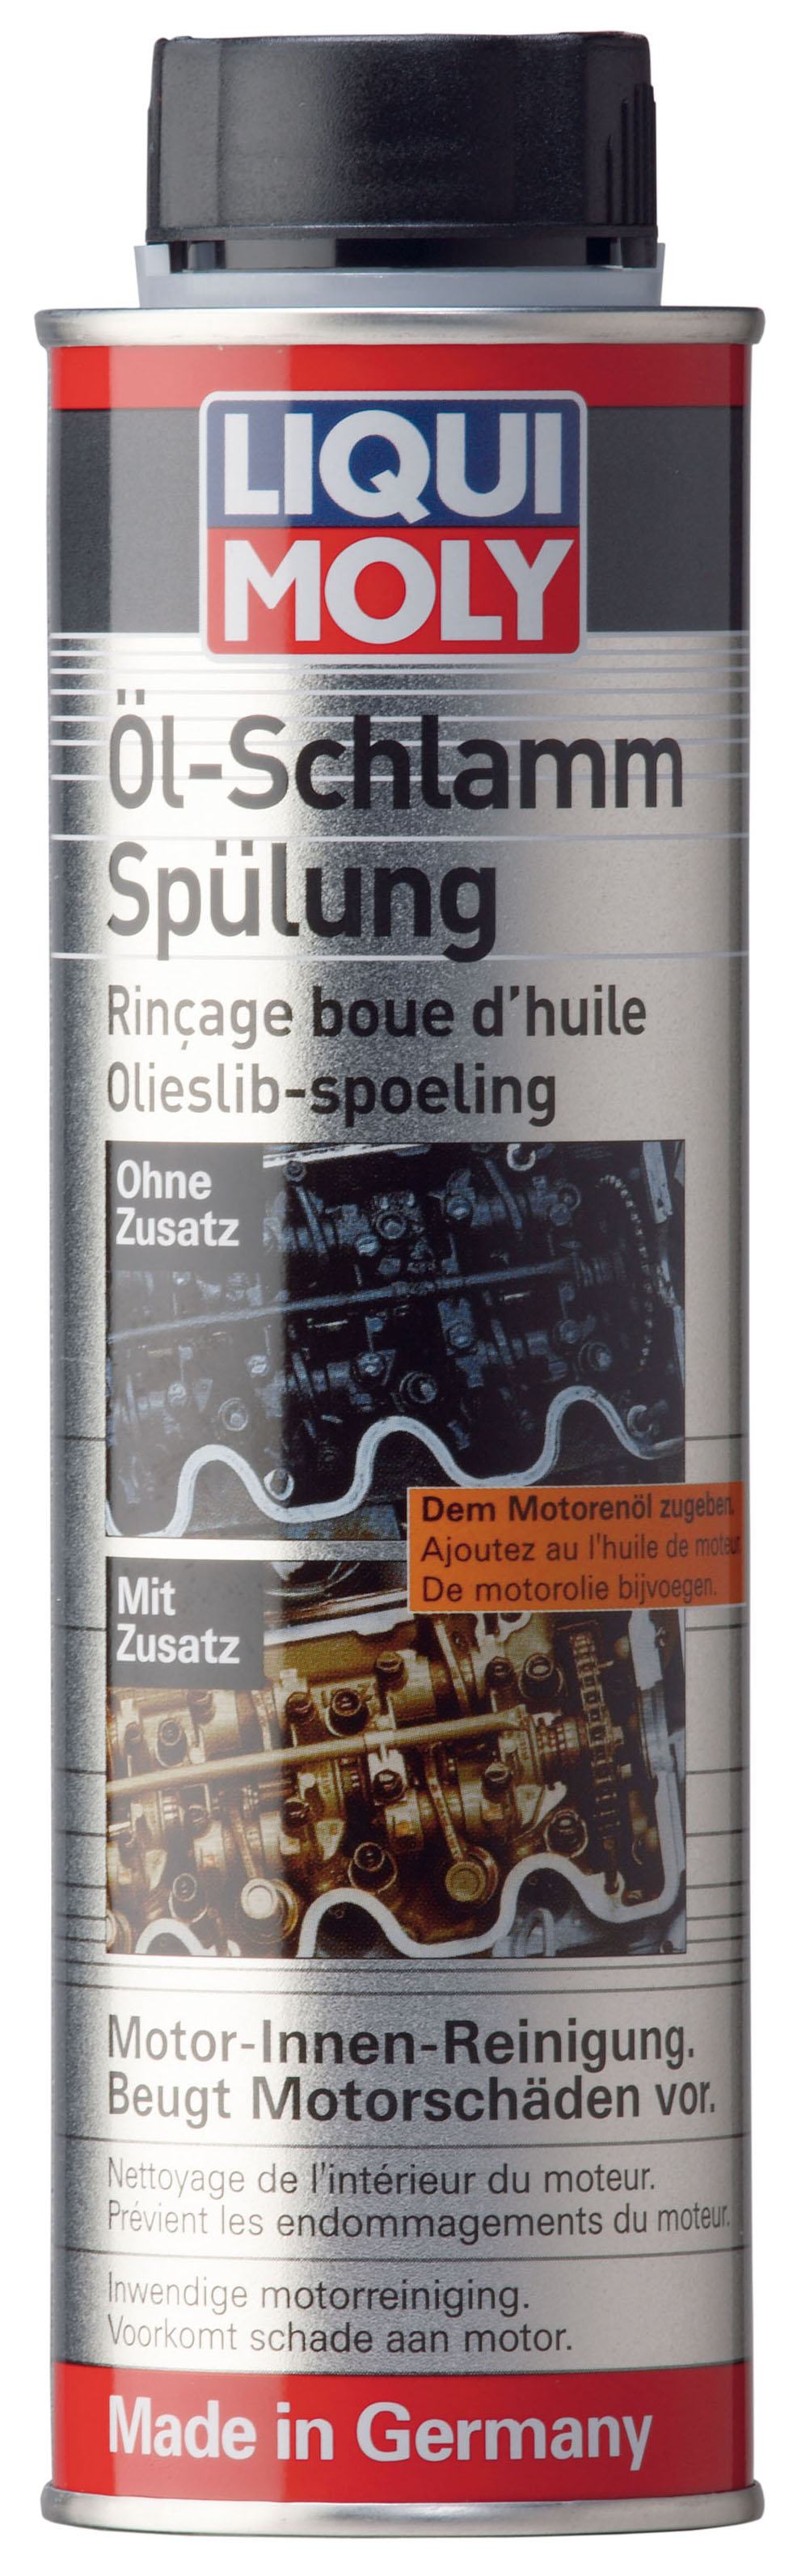 Купить запчасть LIQUI MOLY - 1990 Долговременная промывка масляной системы Oil-Schlamm-Spulung